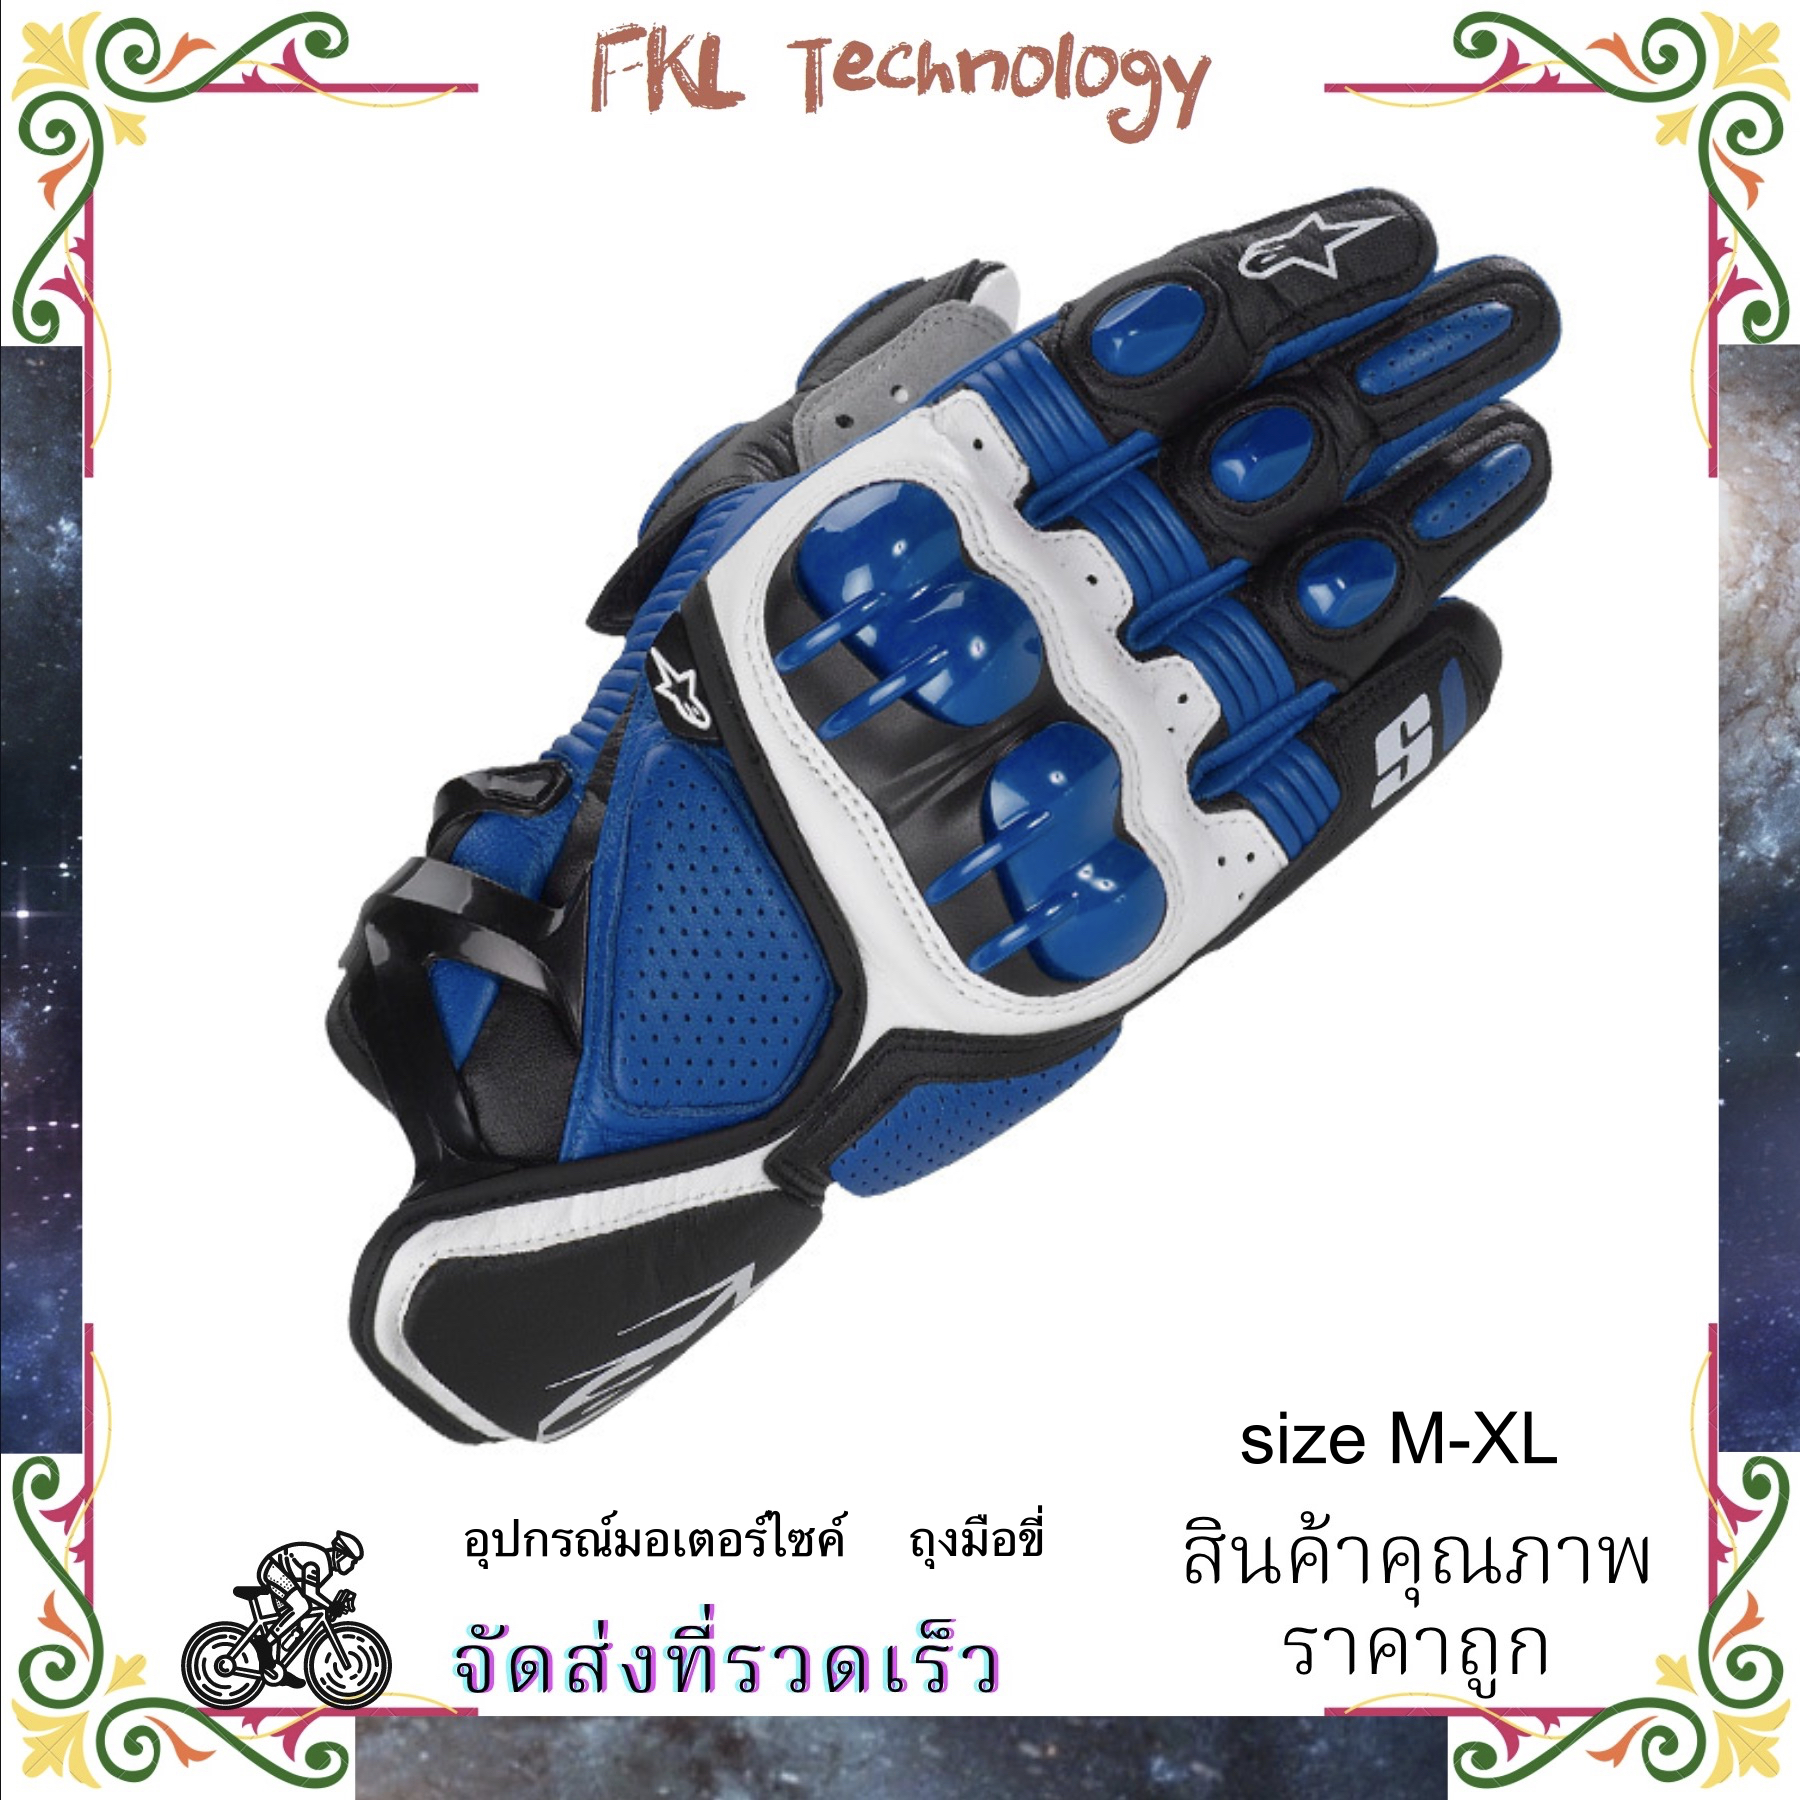 S1 Gloves / S1 ถุงมือ / ถุงมือสั้น / อัศวินรถจักรยานยนต์ถุงมือ / ถุงมือหนังเปลือกแข็ง / ลดลงทน / ลื่น